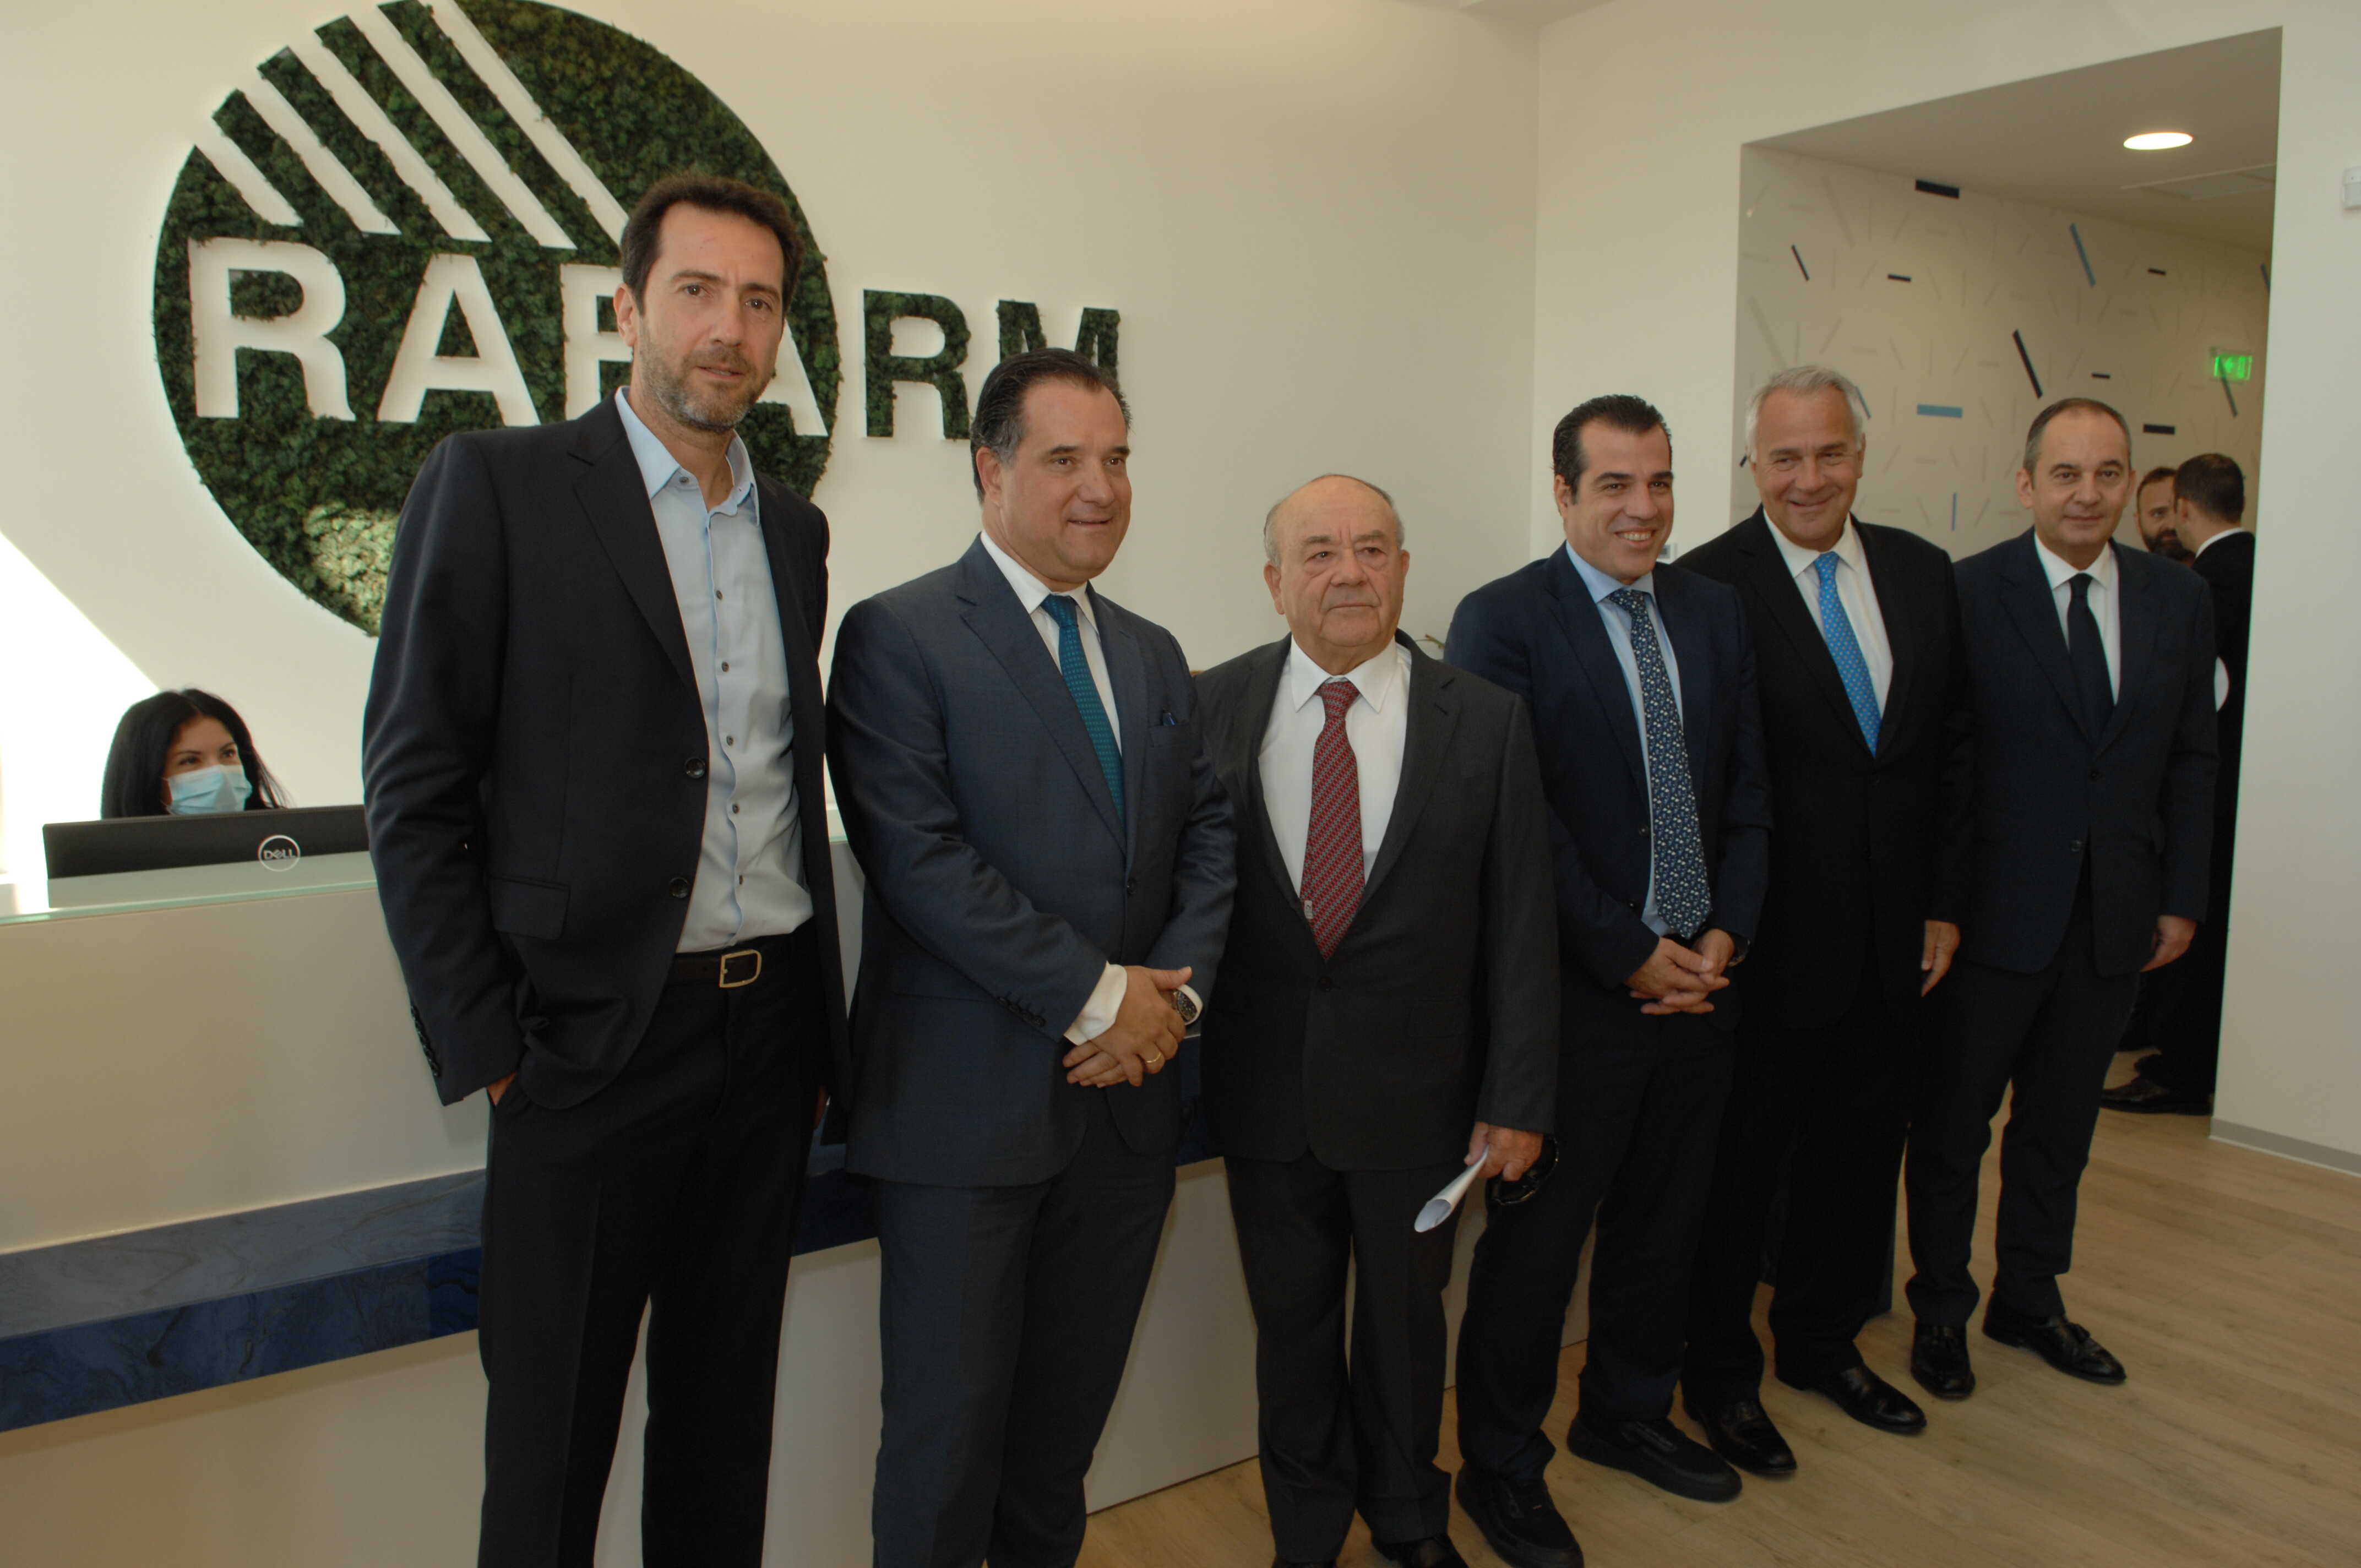 Το νέο Υπερσύγχρονο Κέντρο Έρευνας και Ανάπτυξης  εγκαινίασε η ελληνική φαρμακοβιομηχανία RAFARM